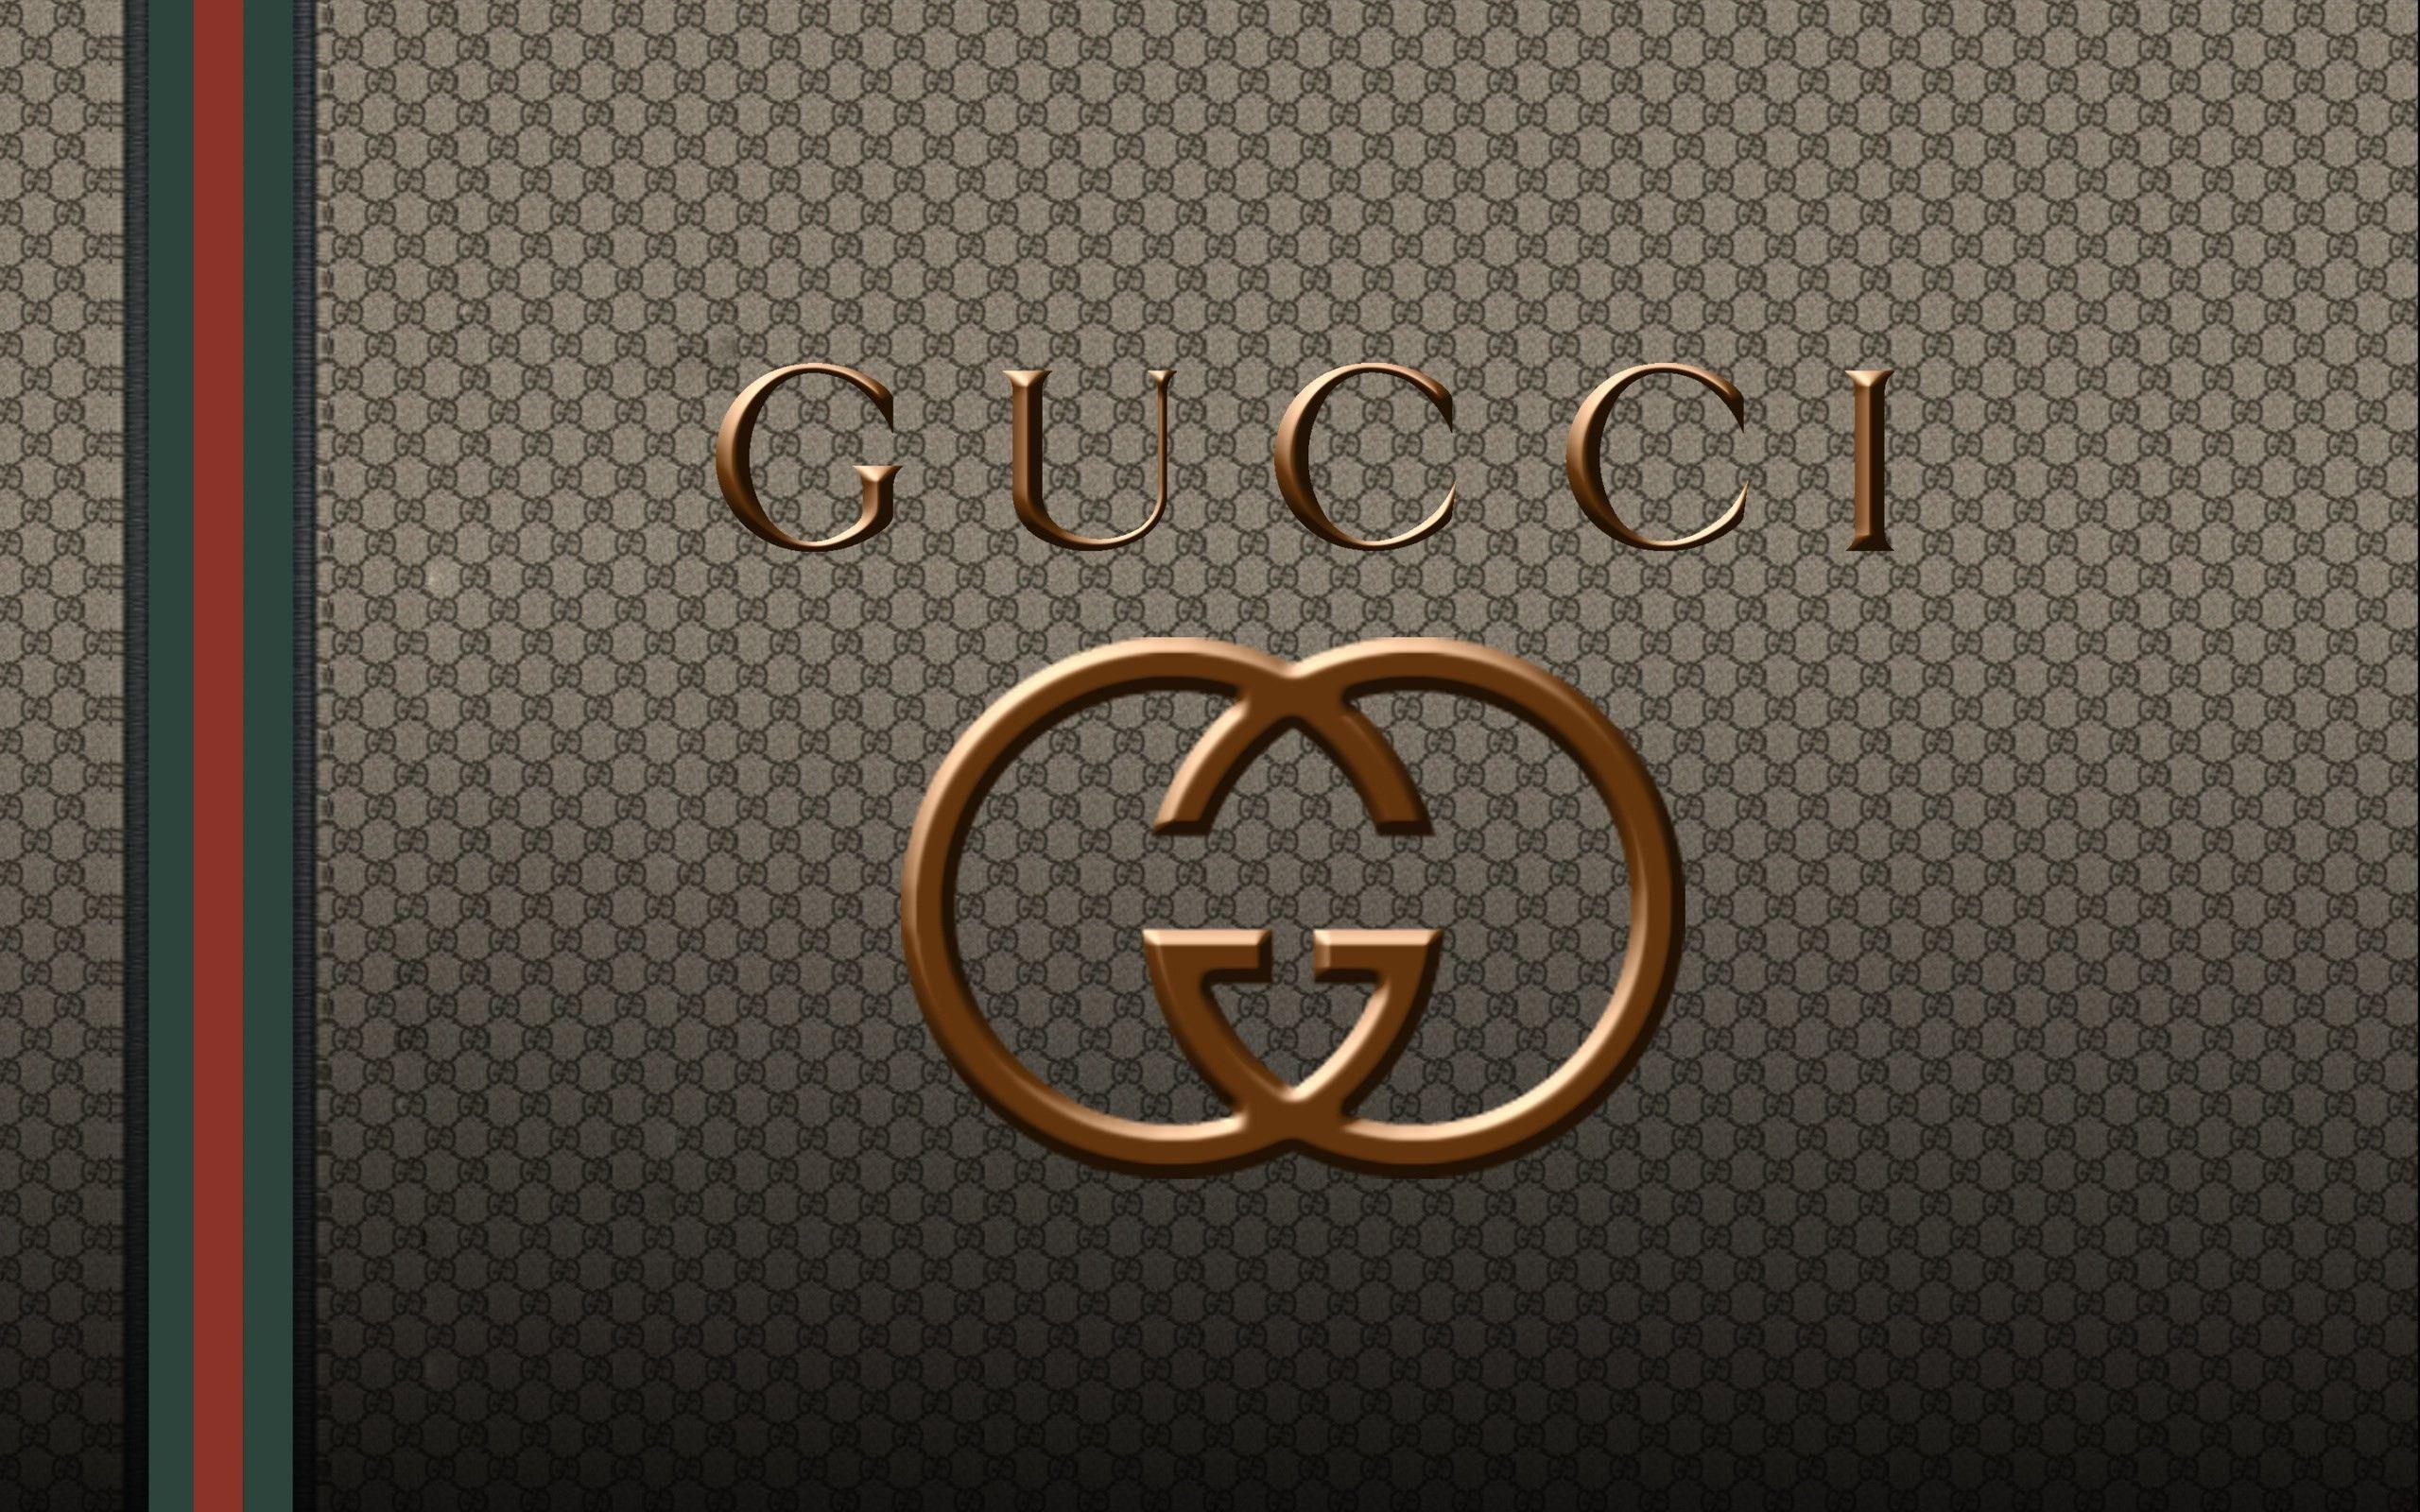 Simple Gucci Logo - Gucci Logo Wallpaper ·①